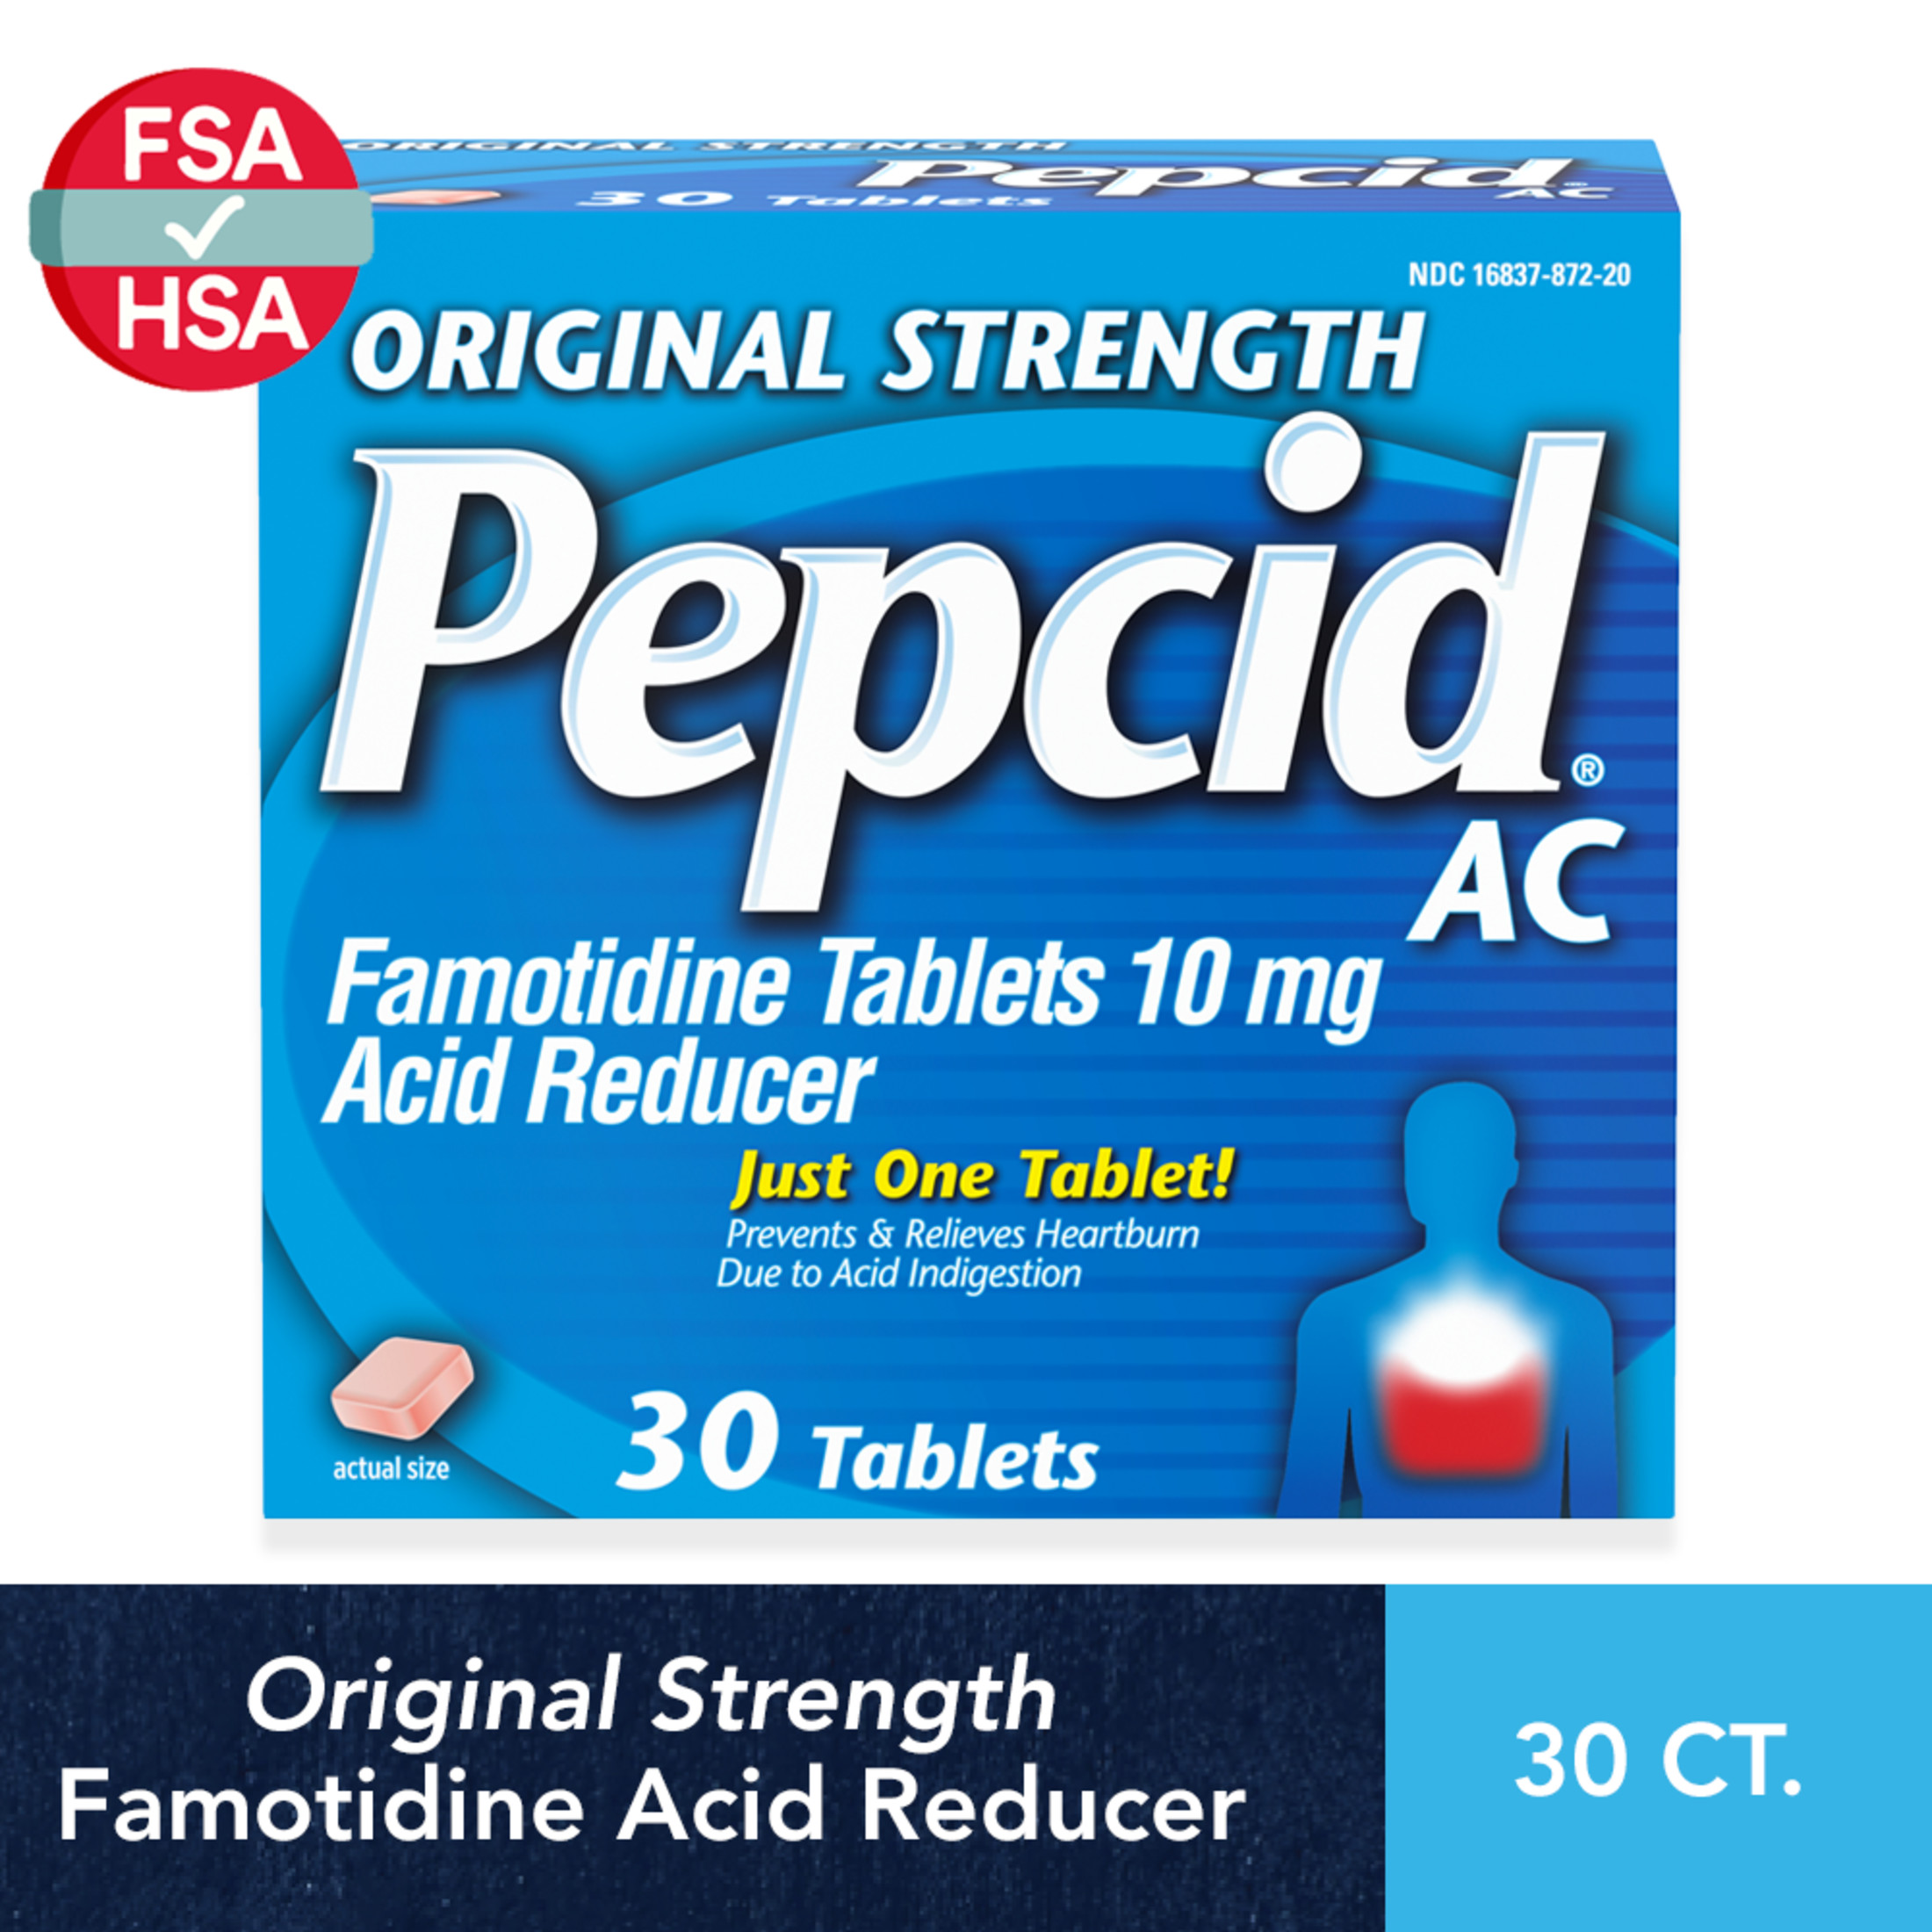 Pepcid AC Original Strength for Heartburn Prevention & Relief, 30 Ct - image 1 of 11